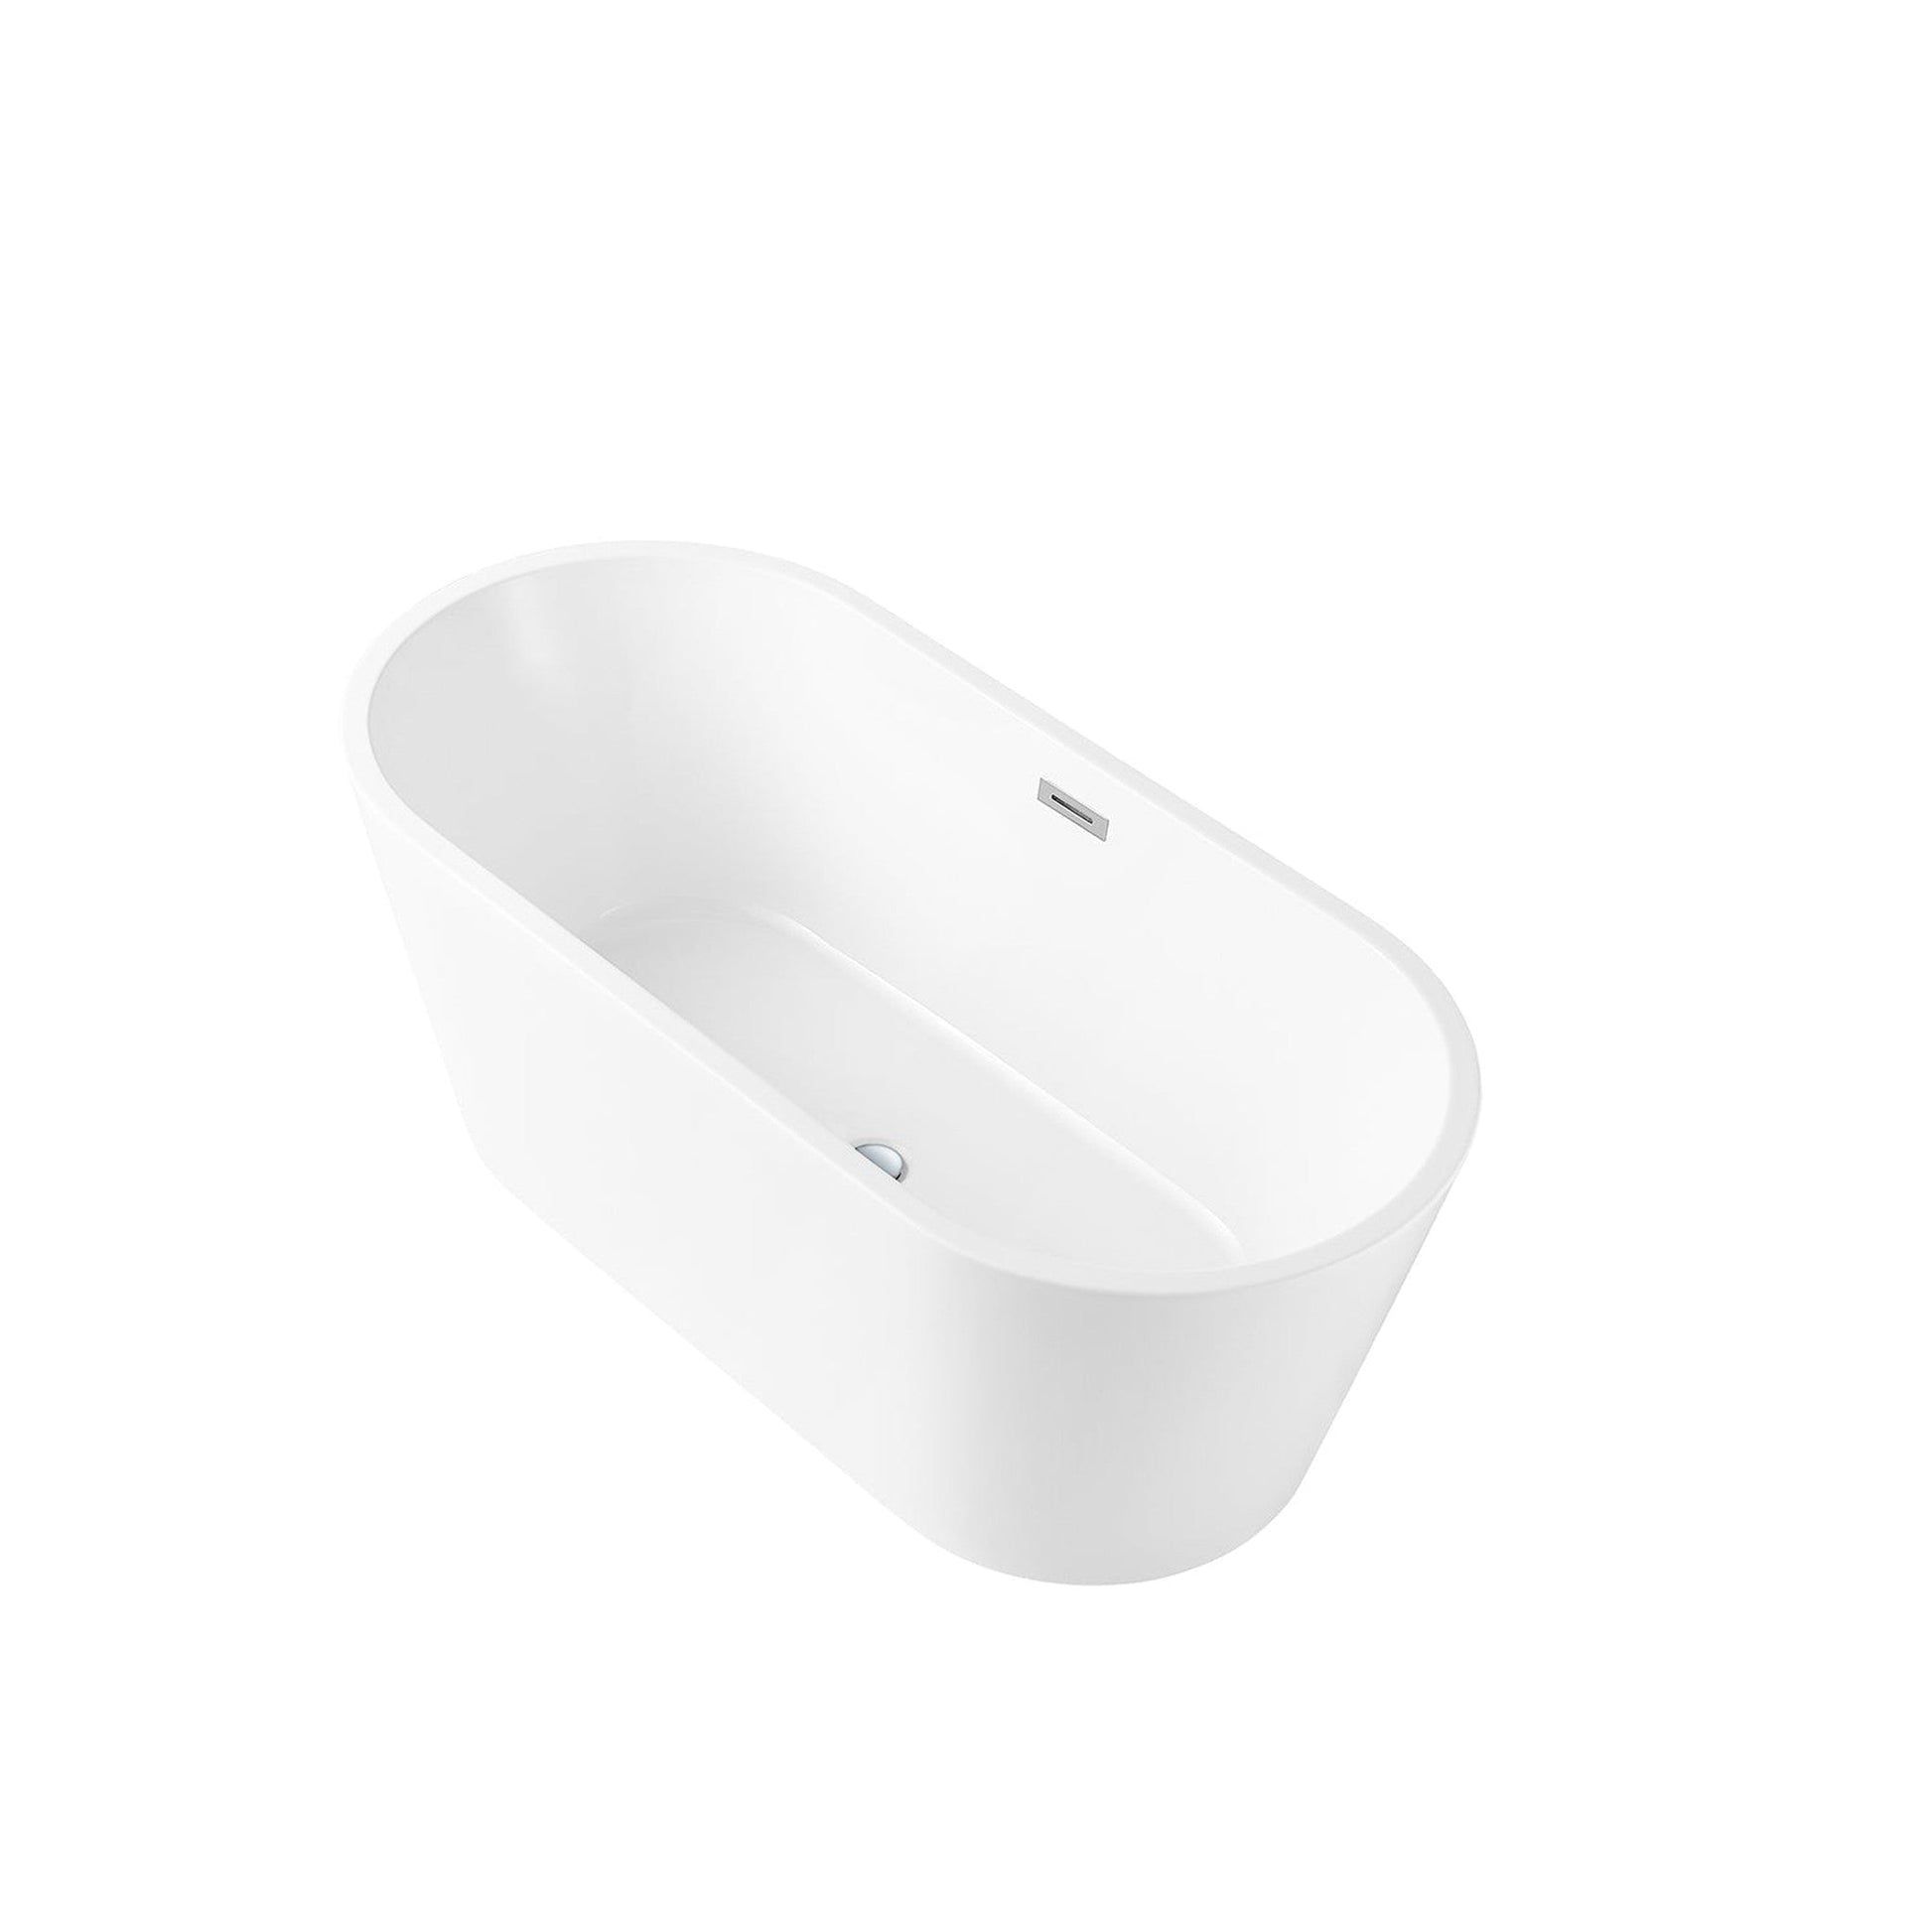 DeerValley Liberty 59" x 28" Oval White Freestanding Acrylic Bathtub